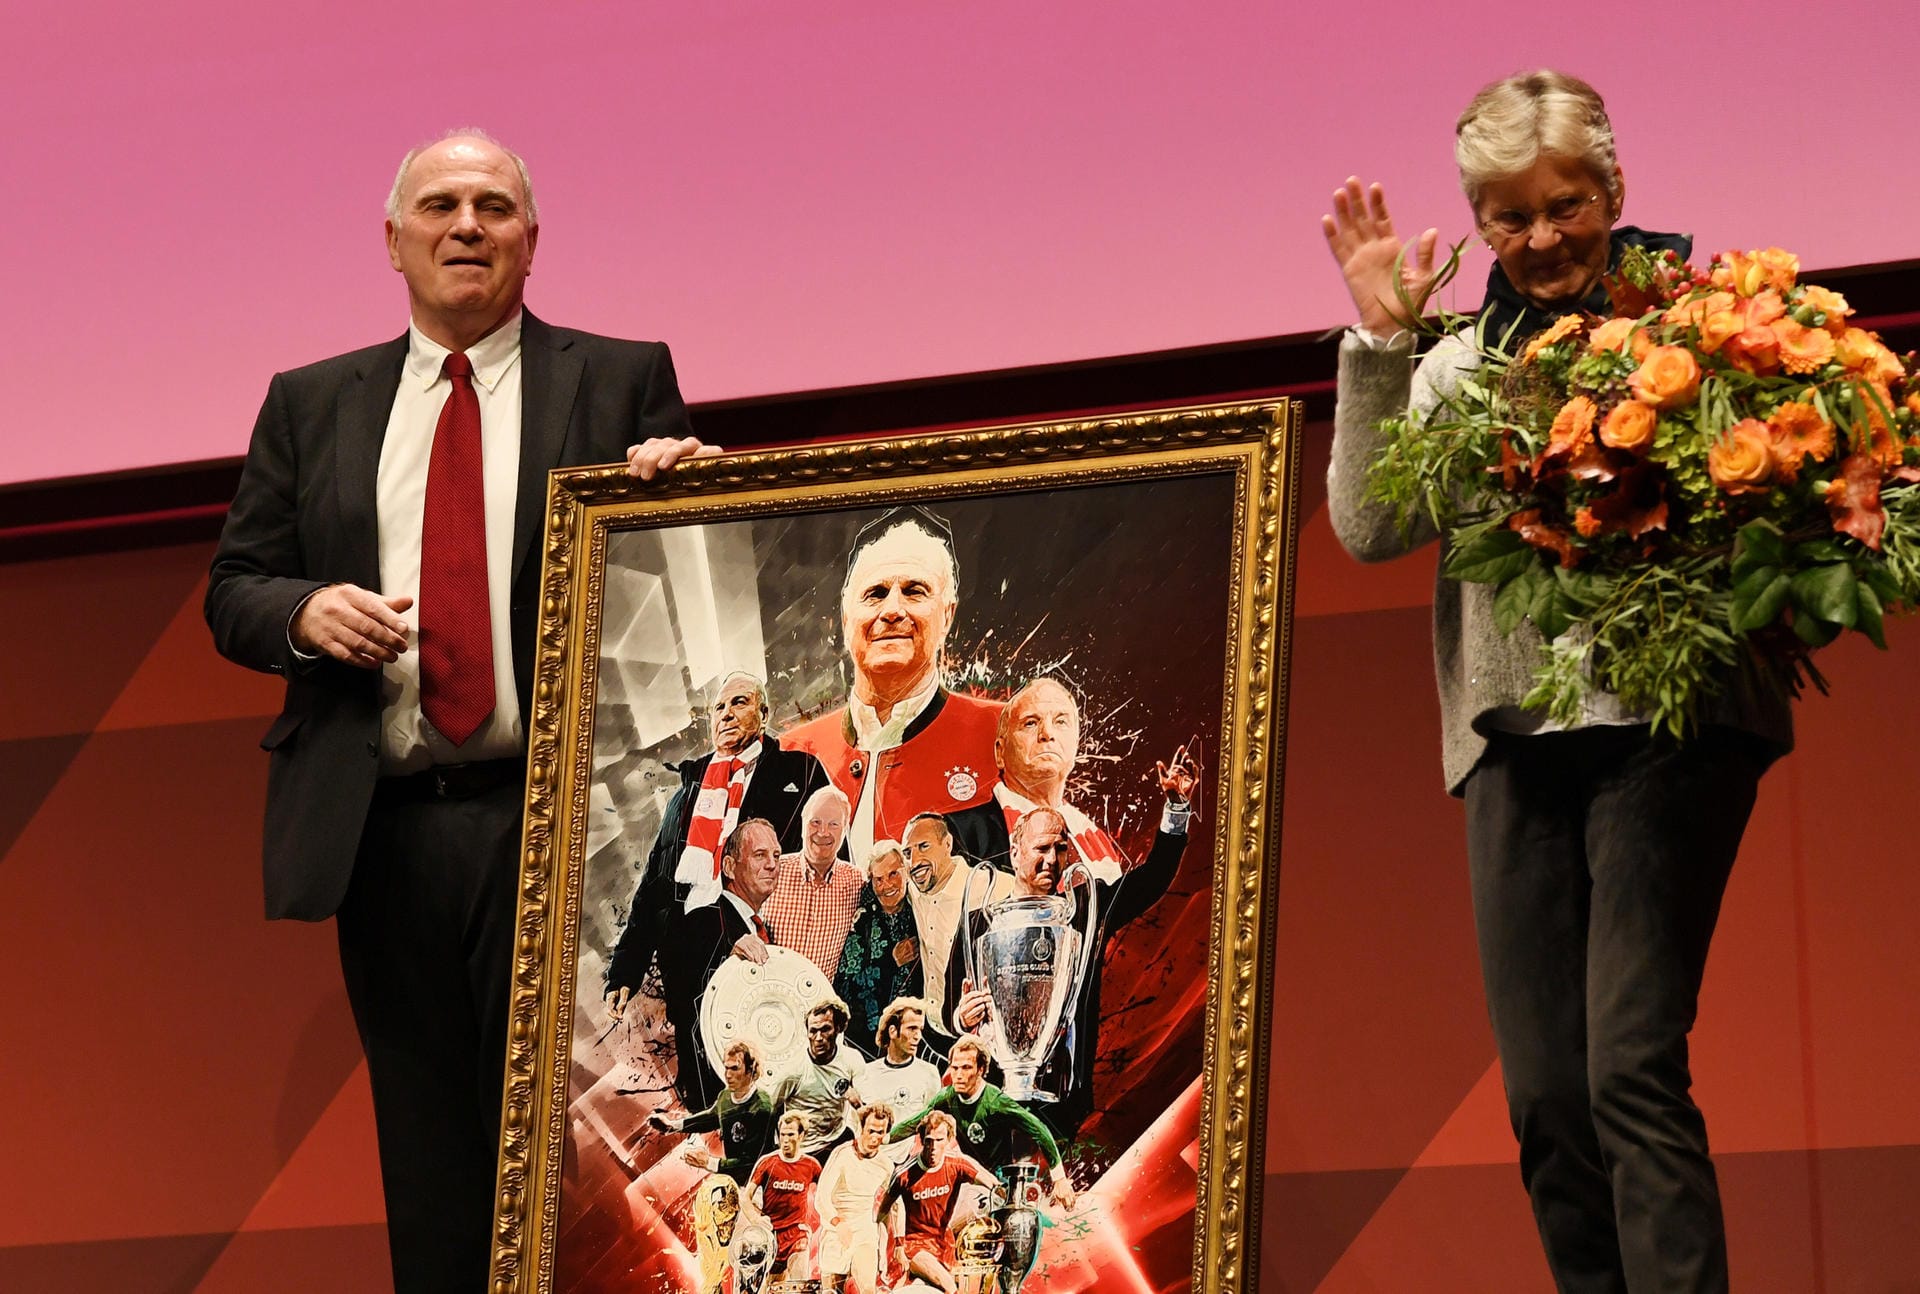 Vielen Dank für die Blumen: Uli Hoeneß mit seiner Frau Susanne Hoeneß.